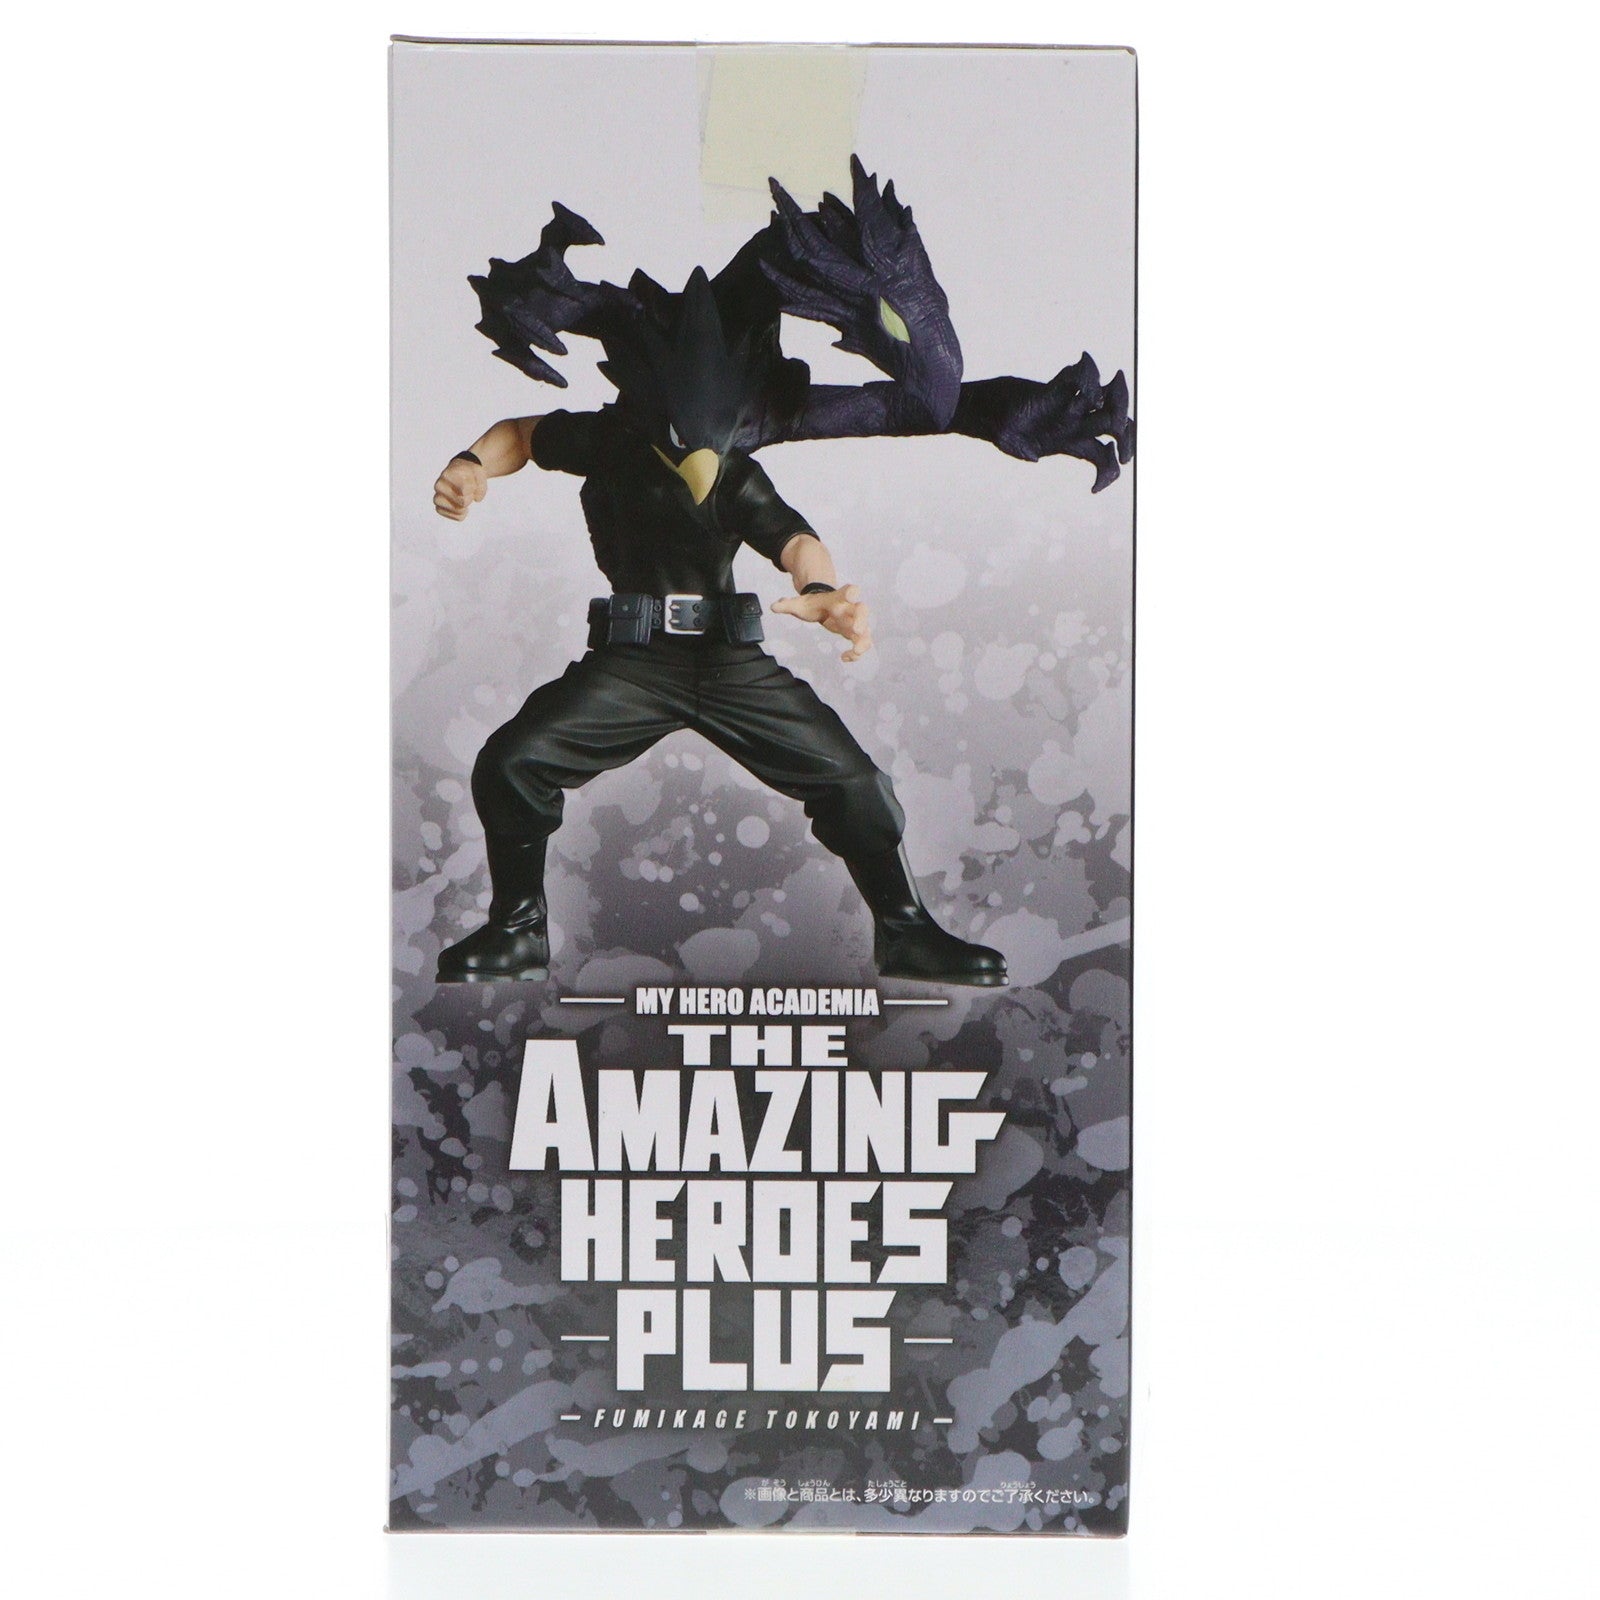 中古即納】[FIG]常闇踏陰(とこやみふみかげ) 僕のヒーローアカデミア THE AMAZING HEROES-PLUS-FUMIKAGE  TOKOYAMI フィギュア プライズ(2704305) バンプレスト